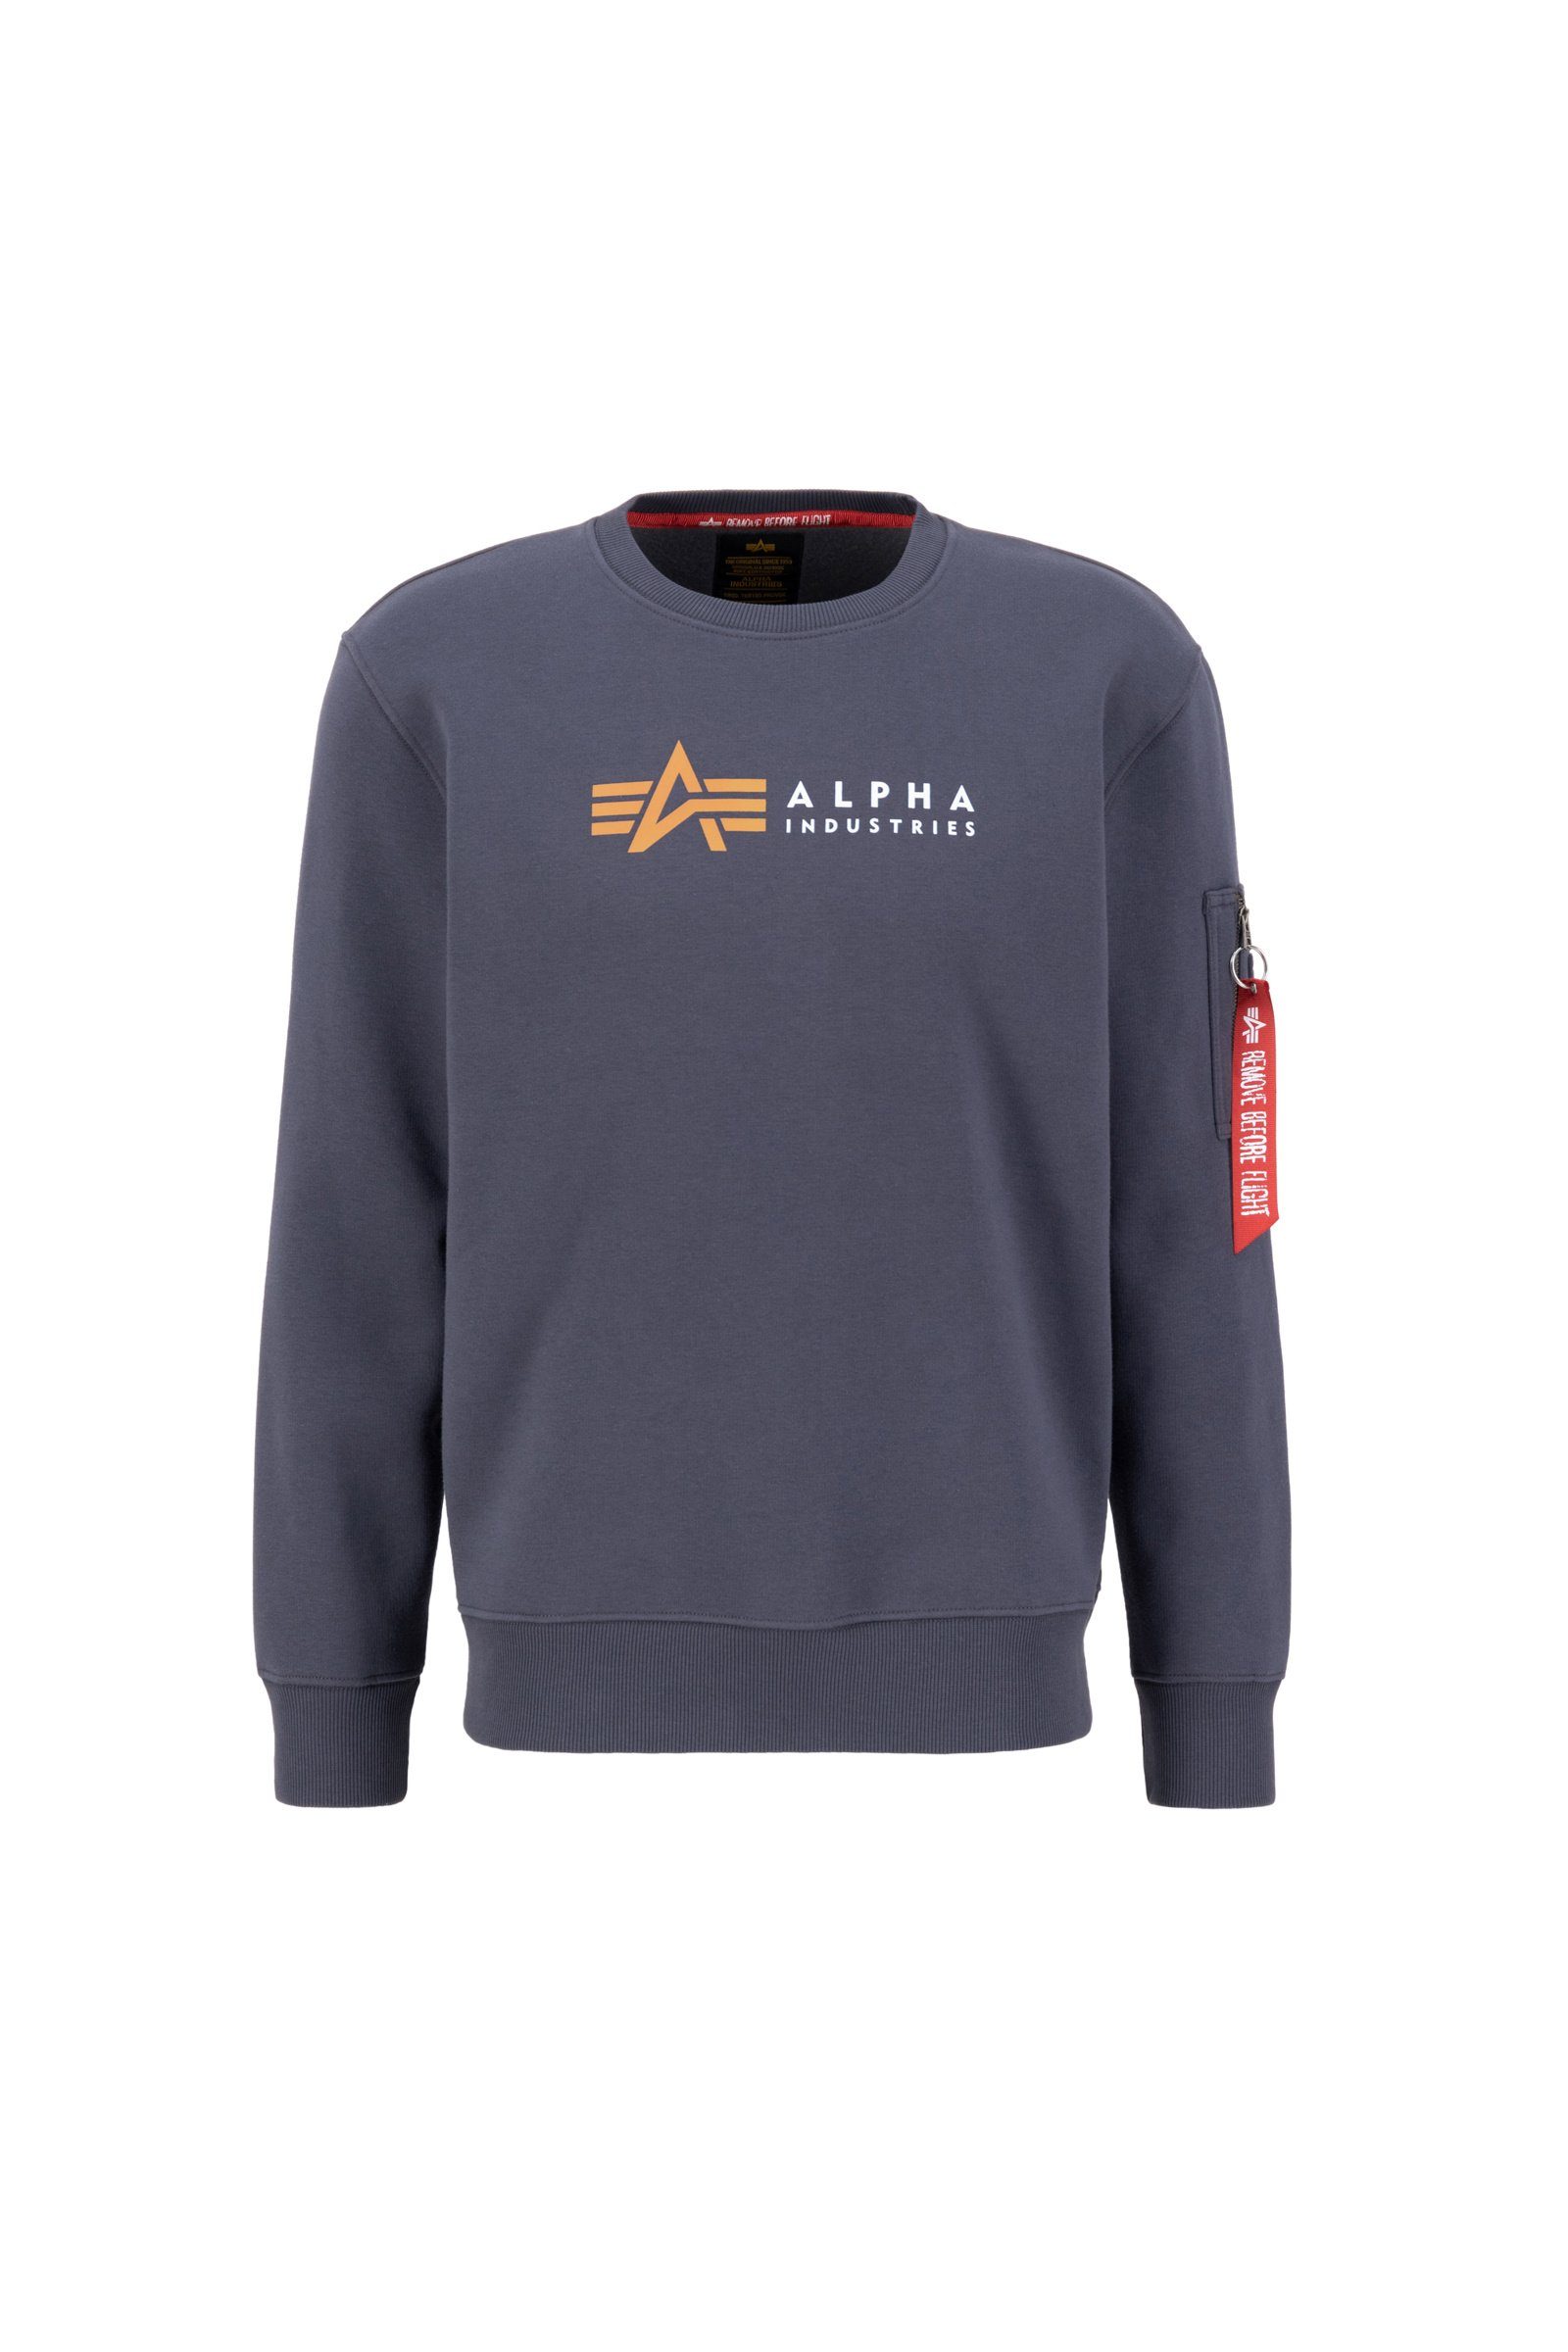 Alpha Industries Sweatshirt Alpha Industries Herren Sweatshirt Alpha Label greyblack